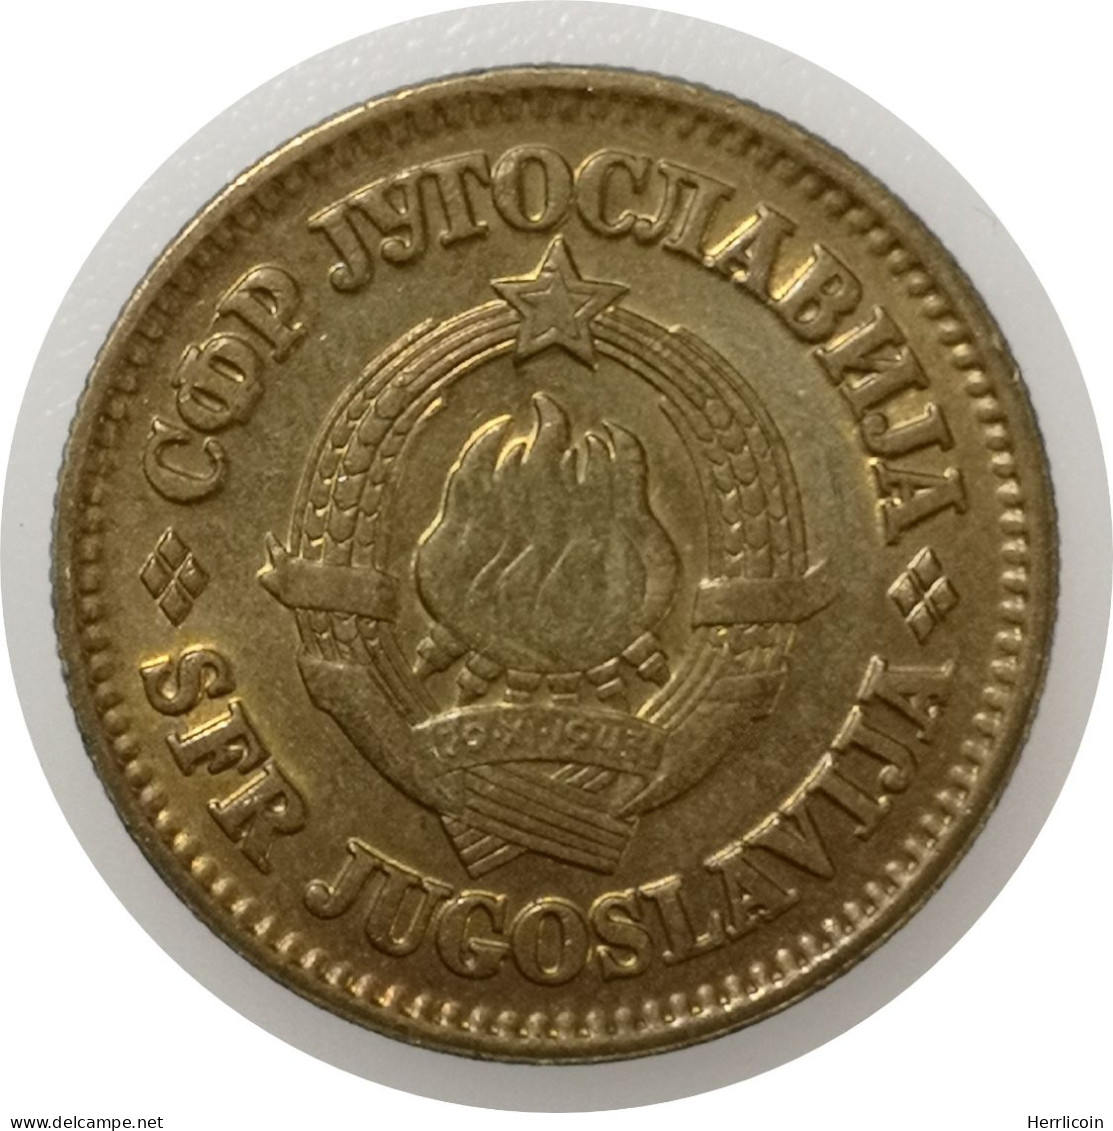 Monnaie Yougoslavie - 1978 - 50 Para - Yougoslavie